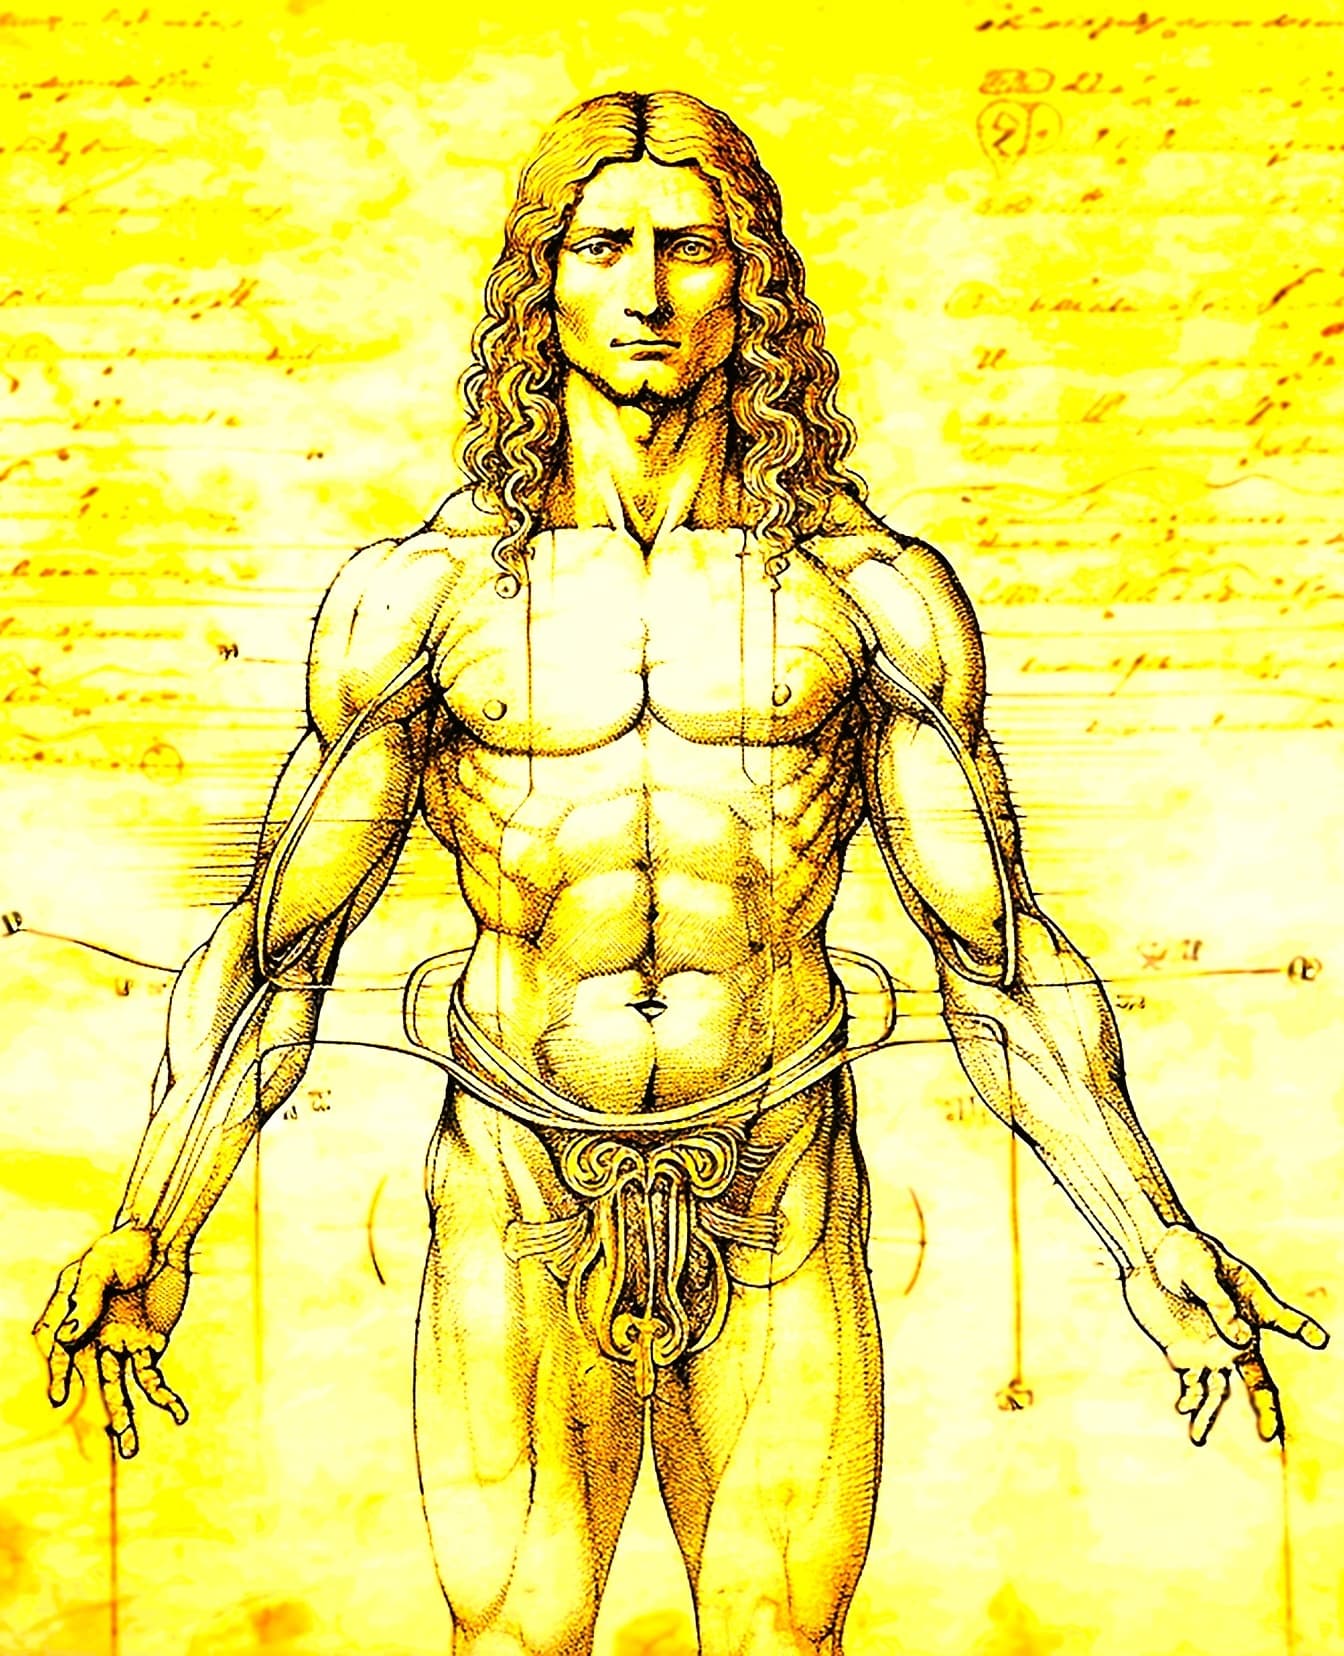 Desenho da anatomia de um homem musculoso, no estilo do Homem Vitruviano de Leonardo da Vinci